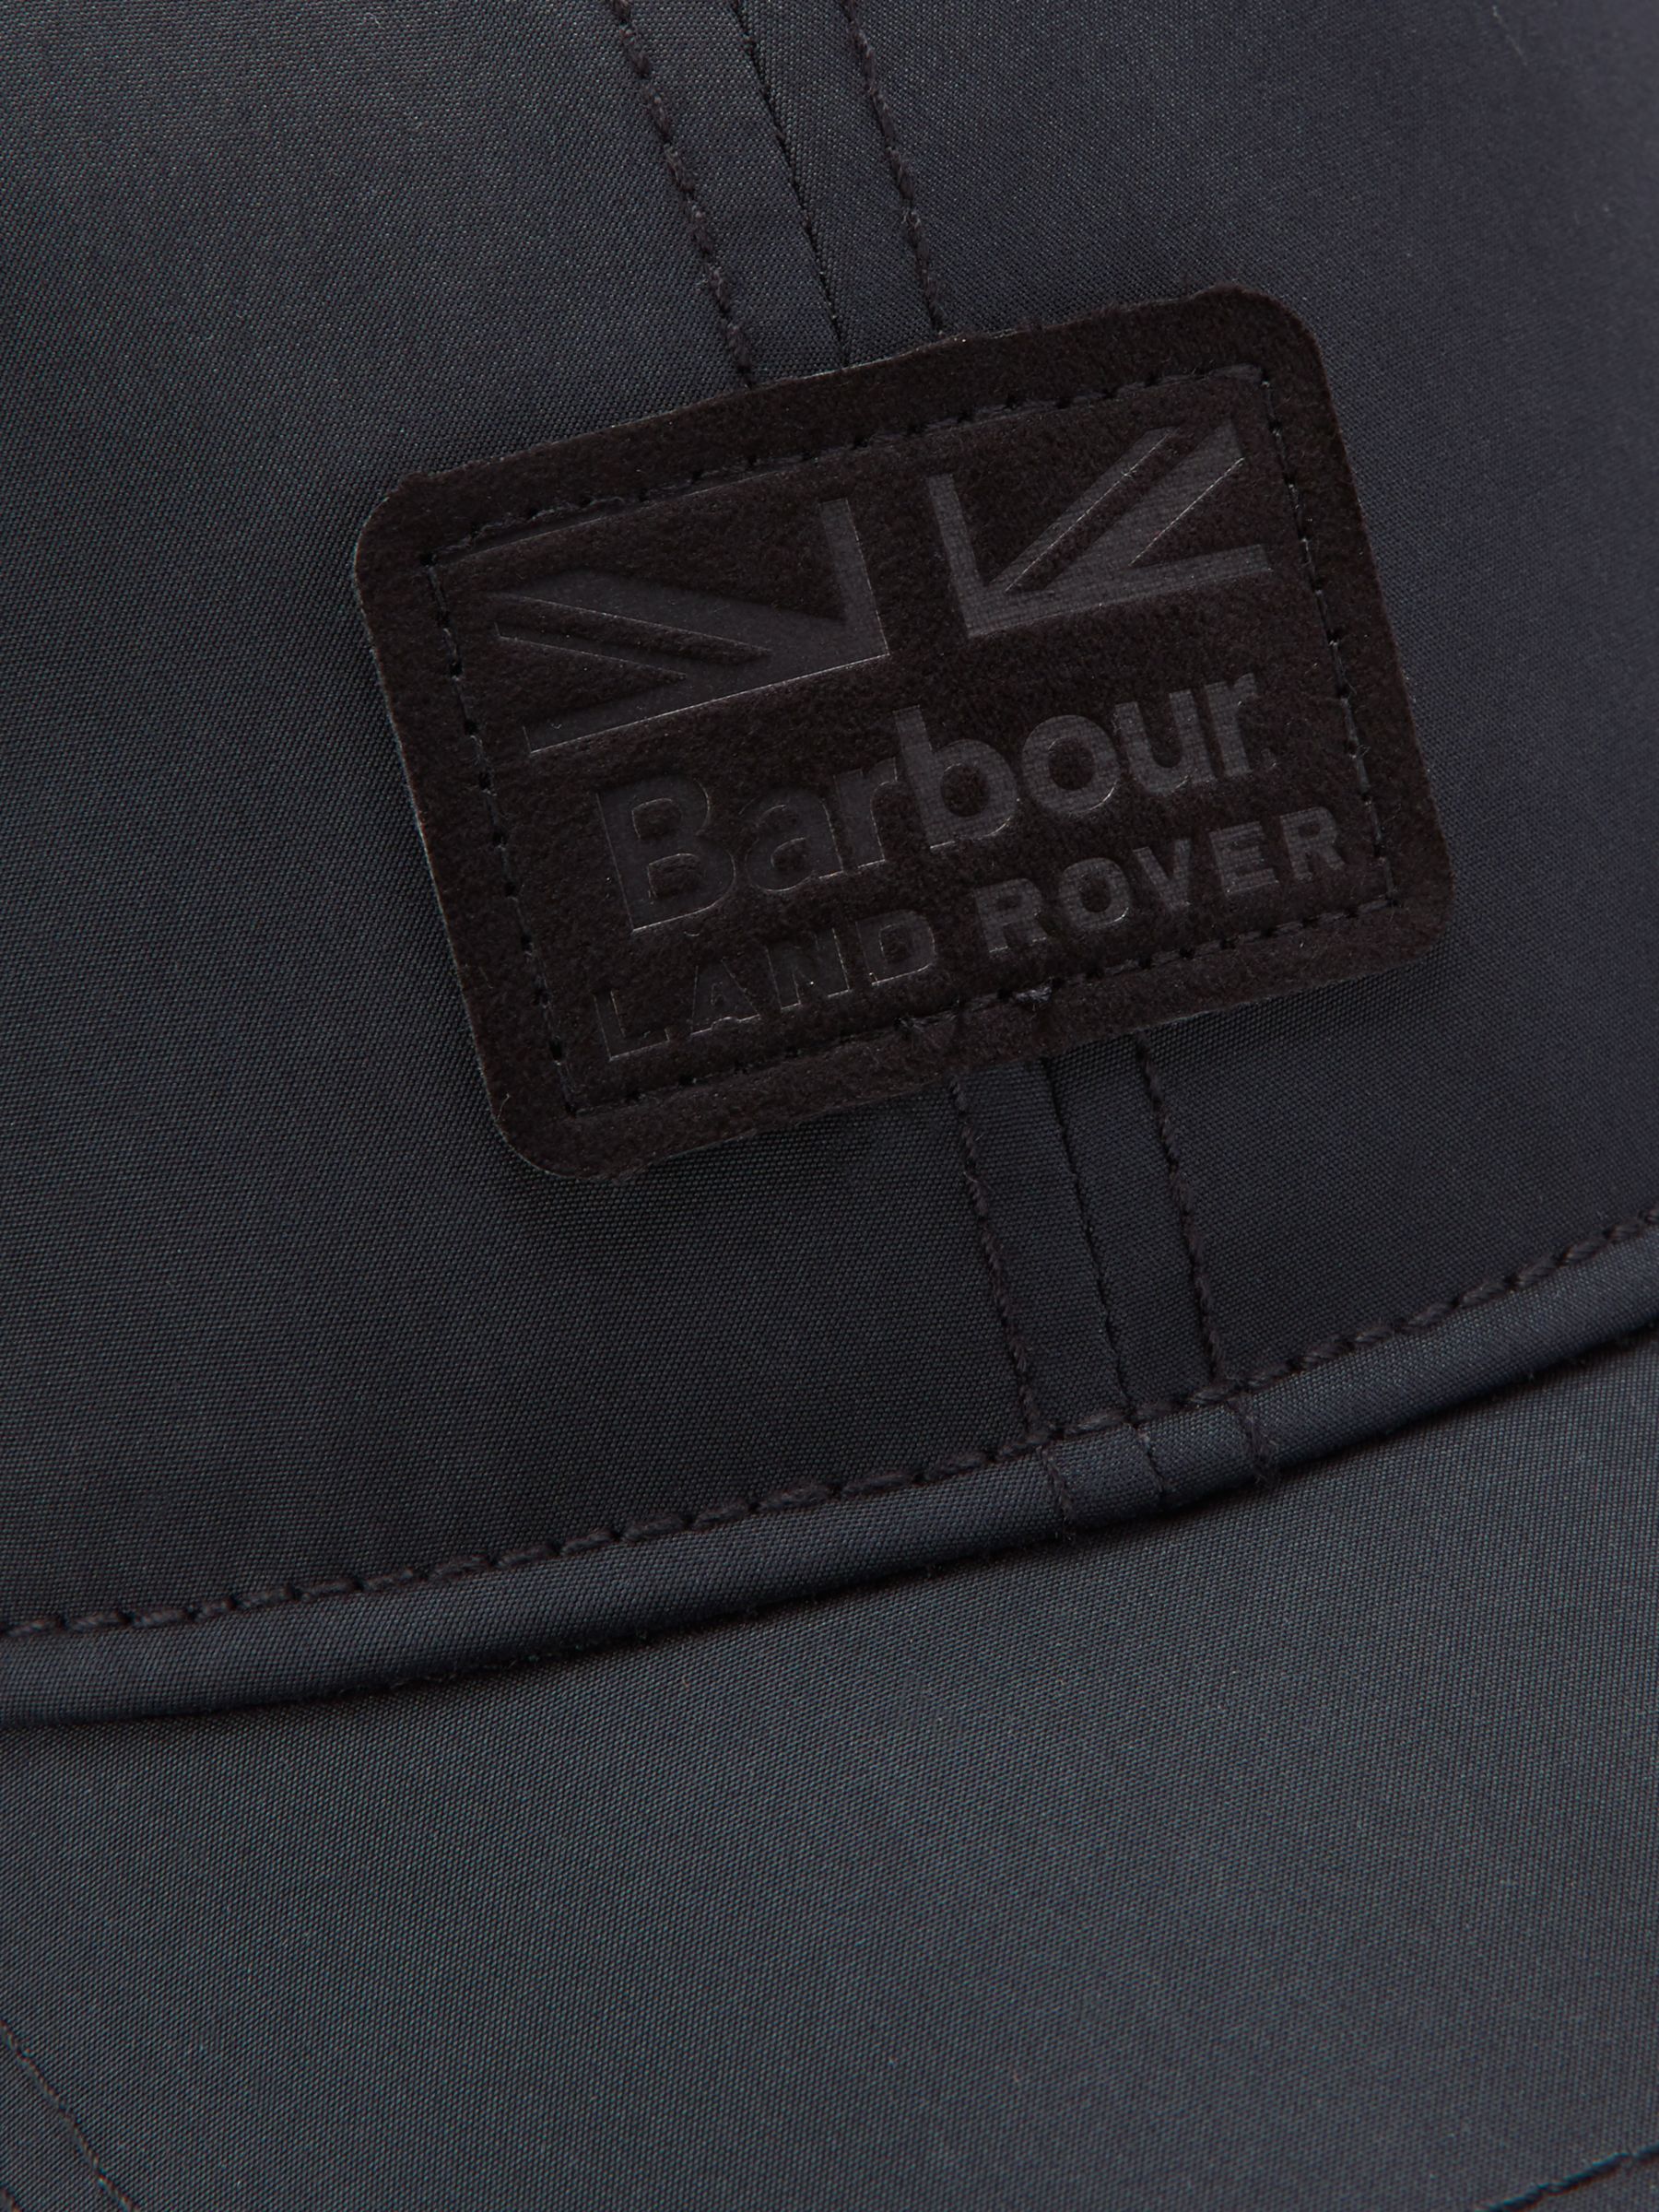 barbour land rover cap